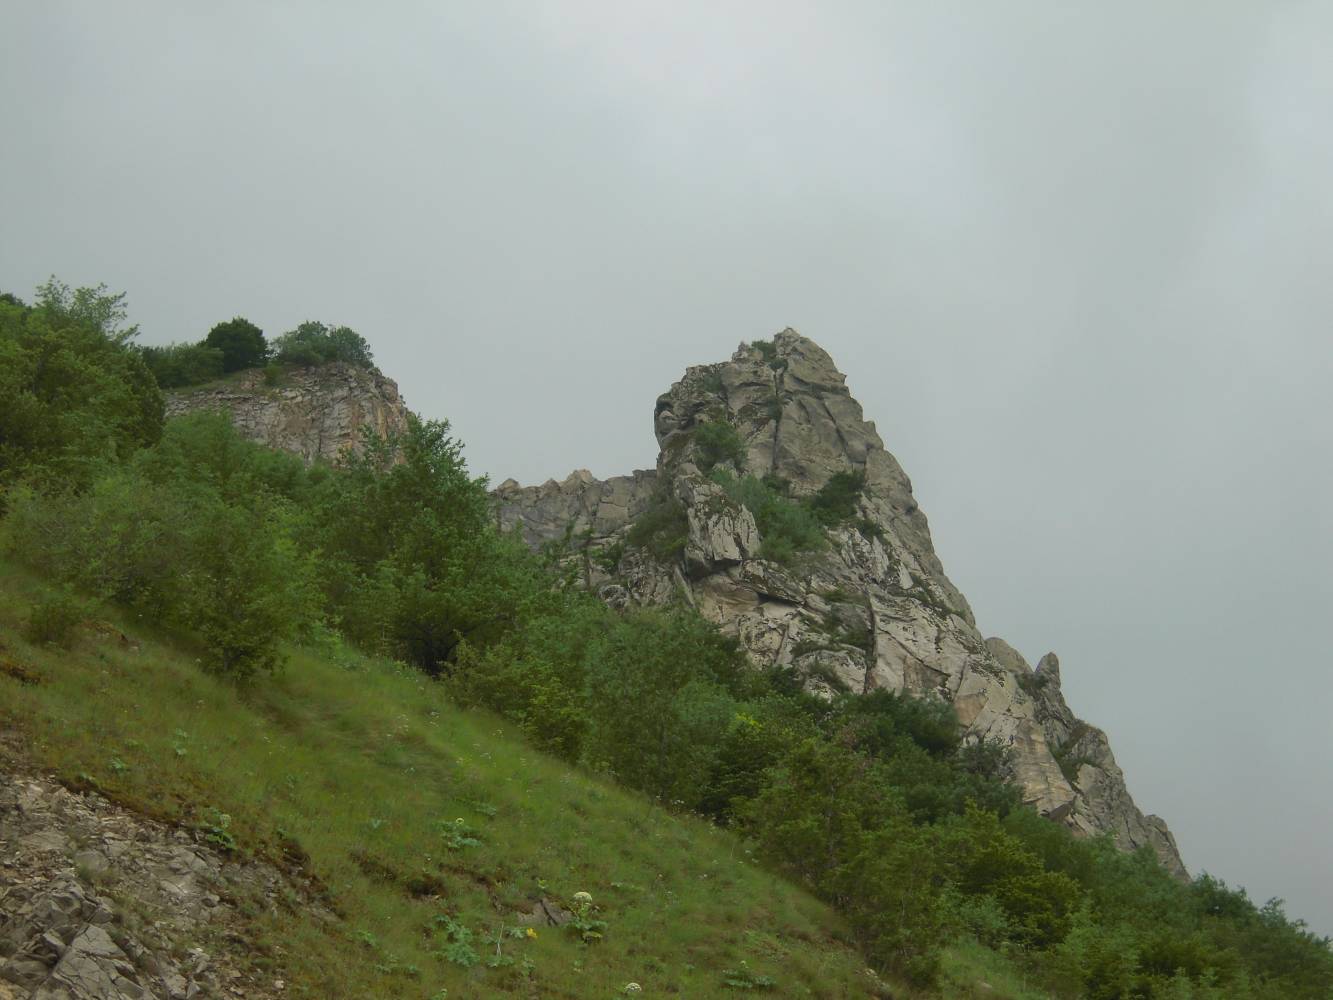 Гора Змейка, изображение ландшафта.